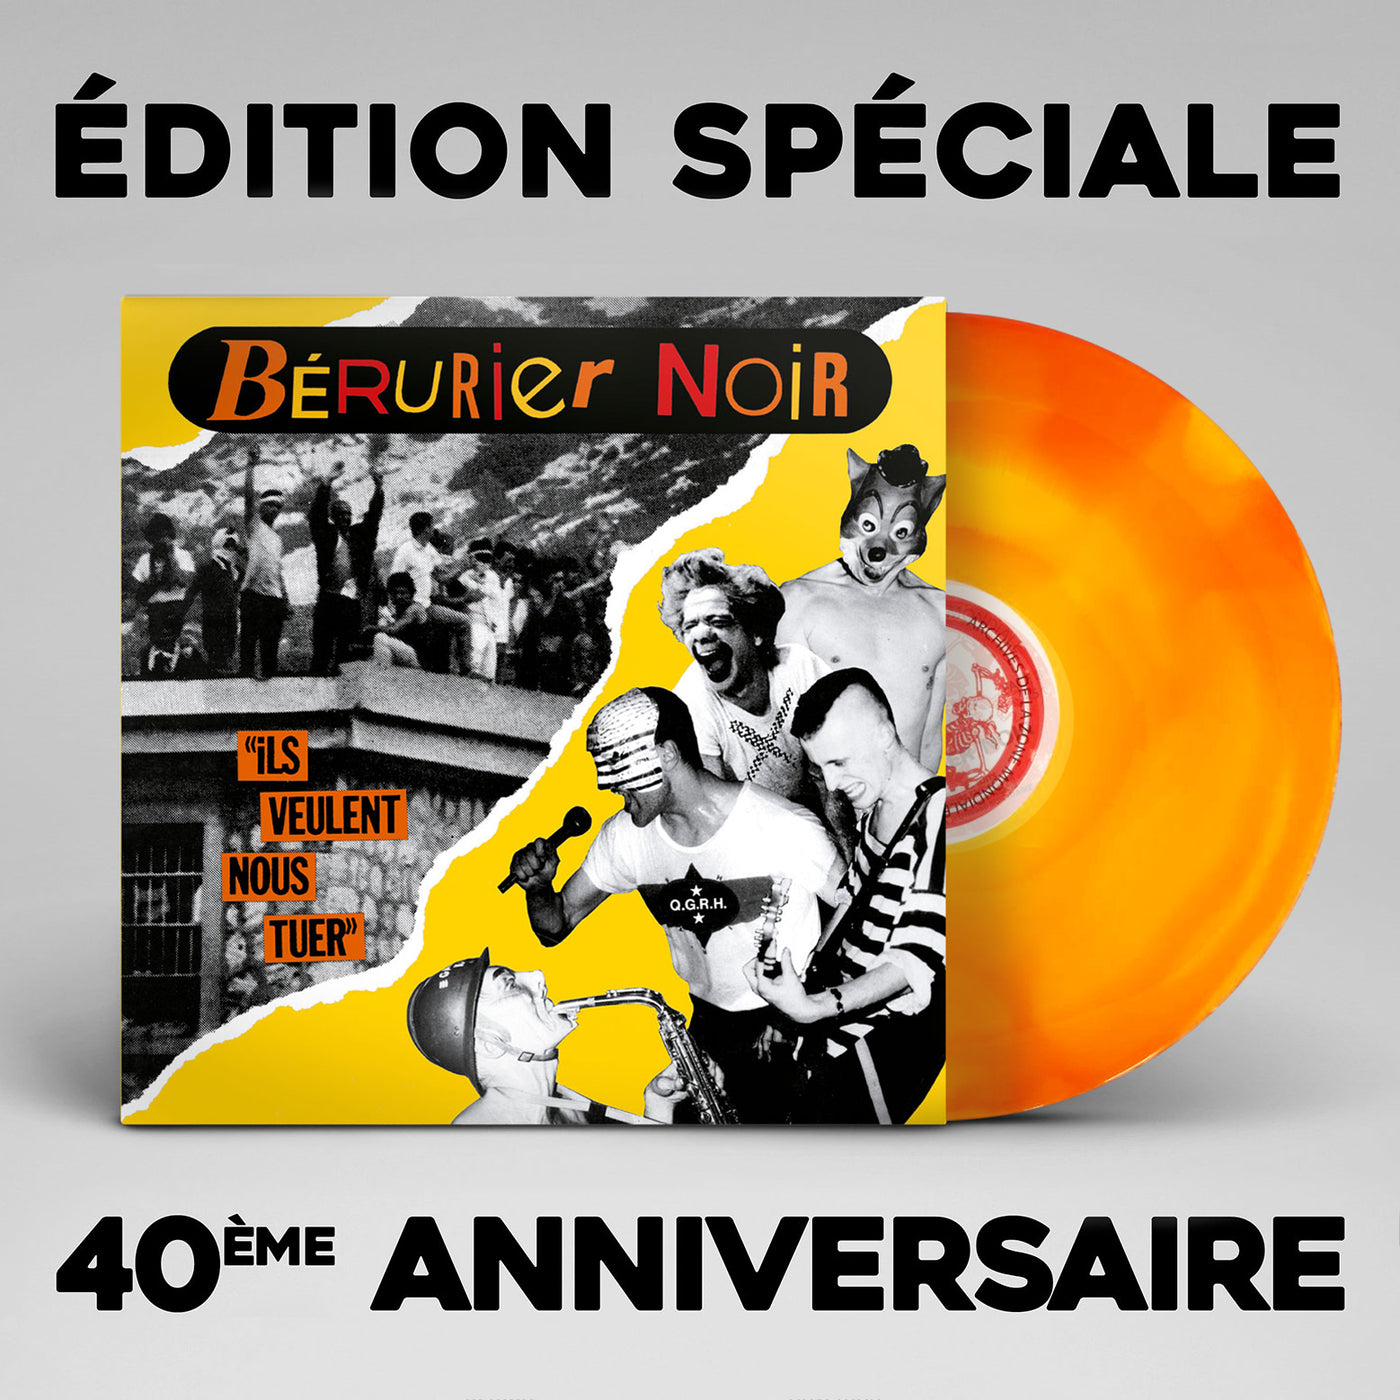 Bérurier Noir "ils veulent nous tuer" édition spéciale 1983-2023, vinyle couleur orange et jaune